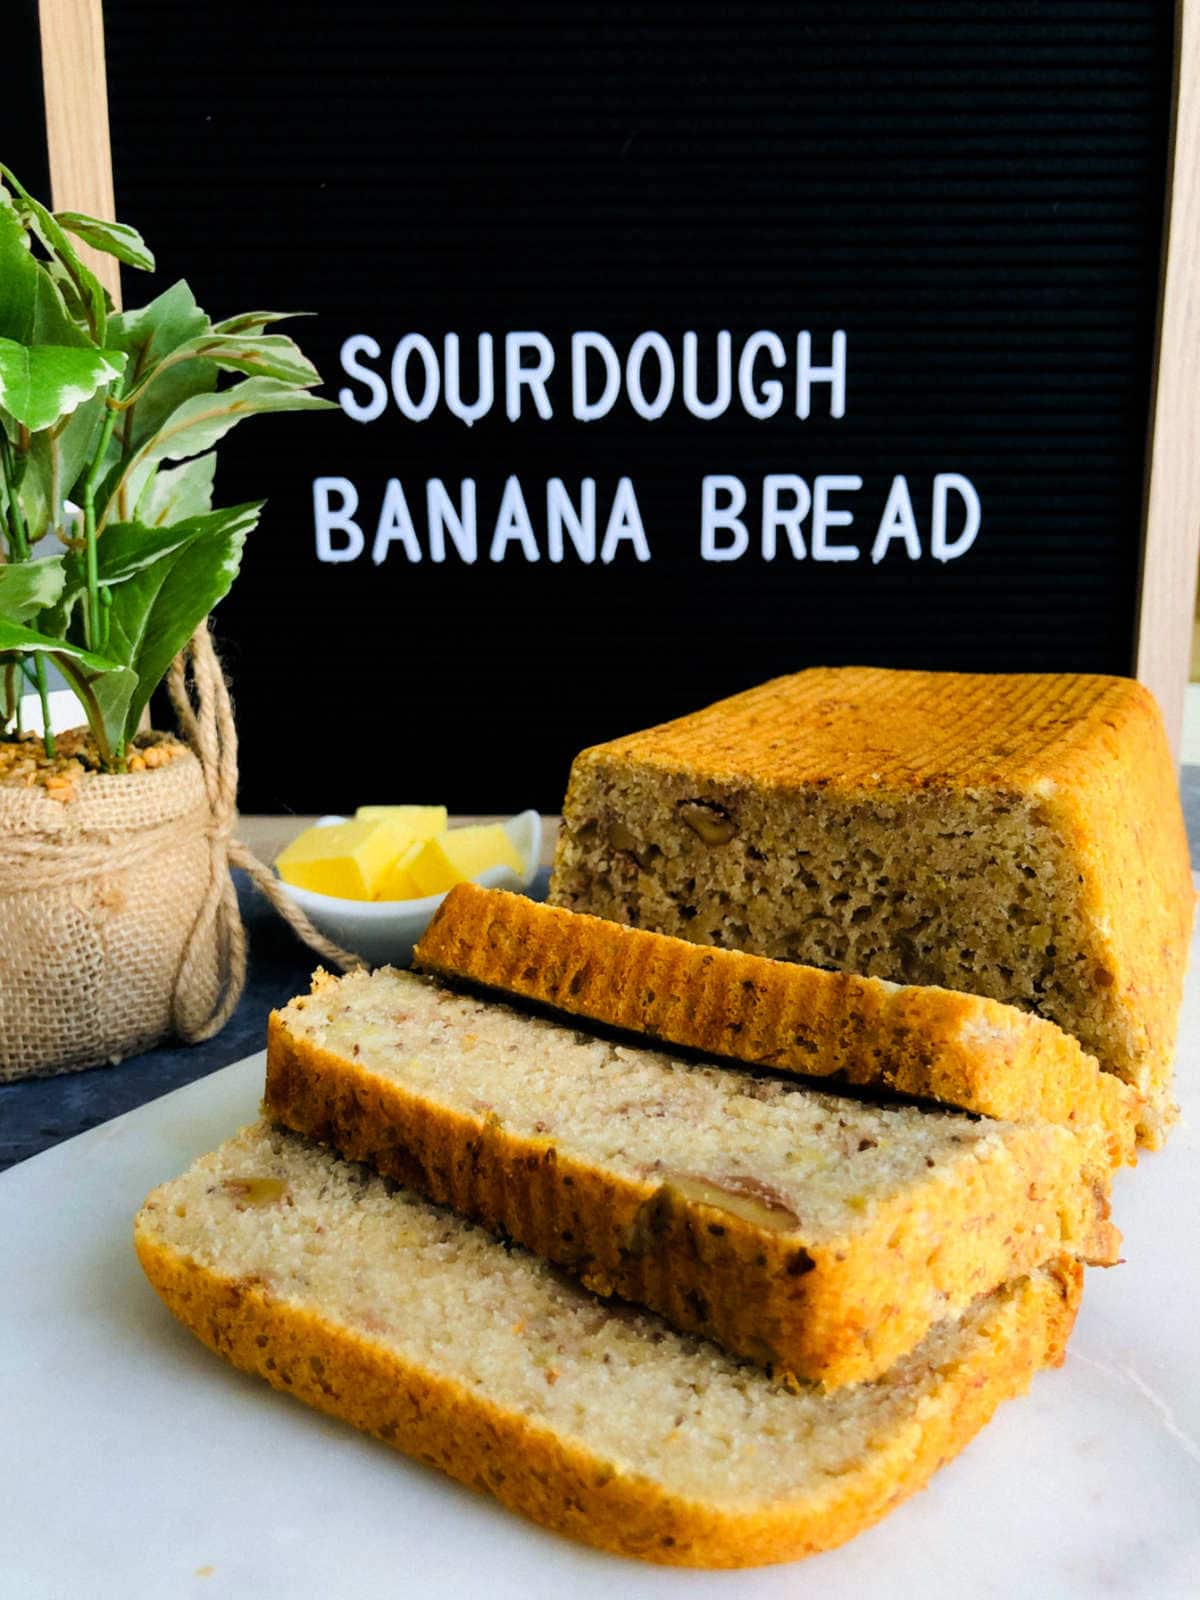 Sourdough banana bread.